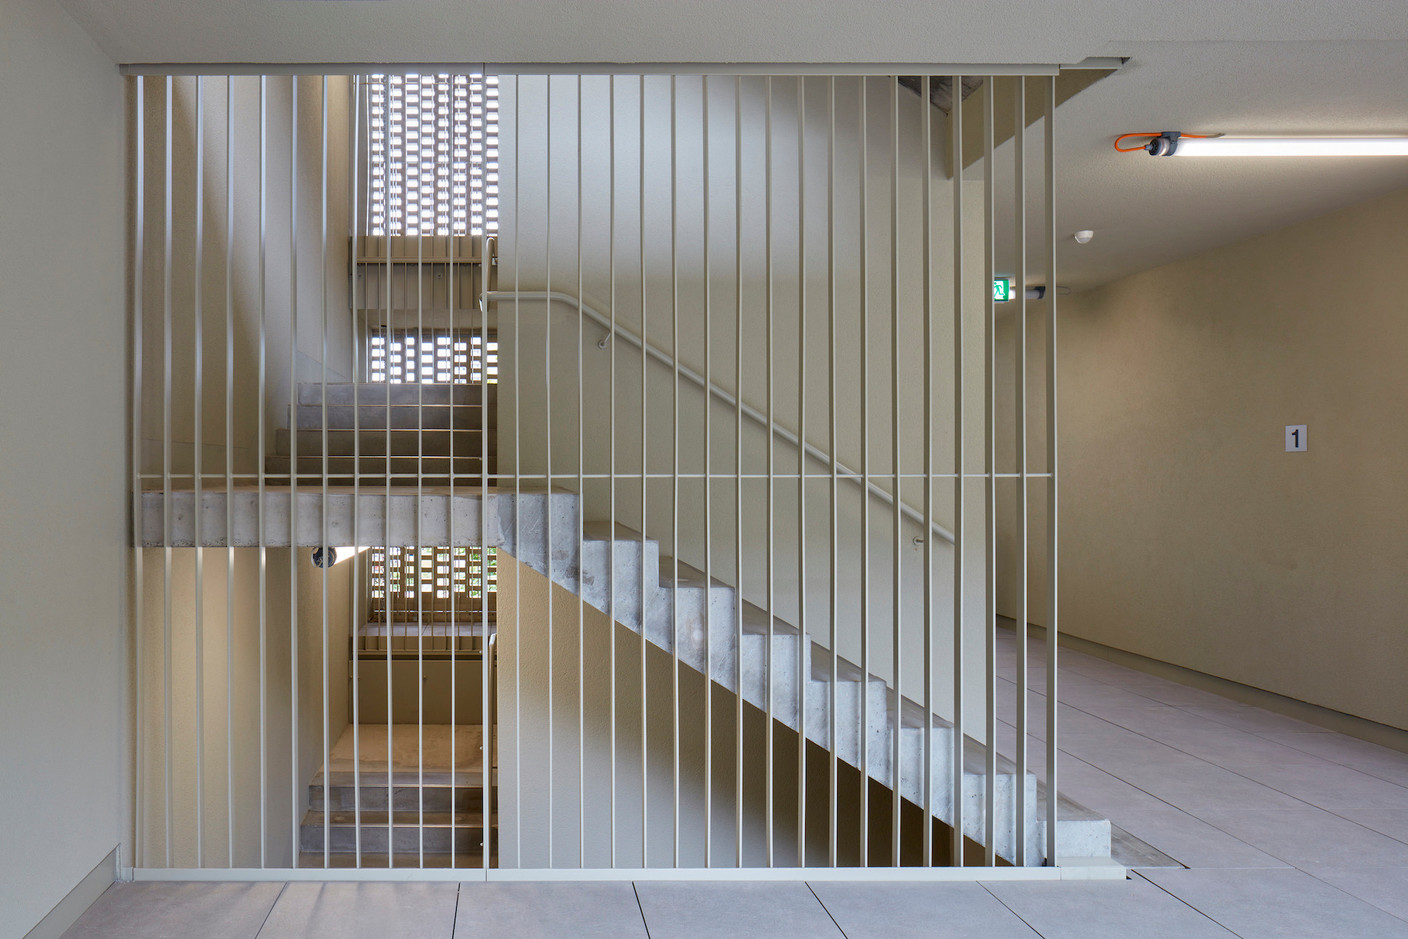 Vue d’une des cages d’escalier. (Photo: Palladium Photodesign)